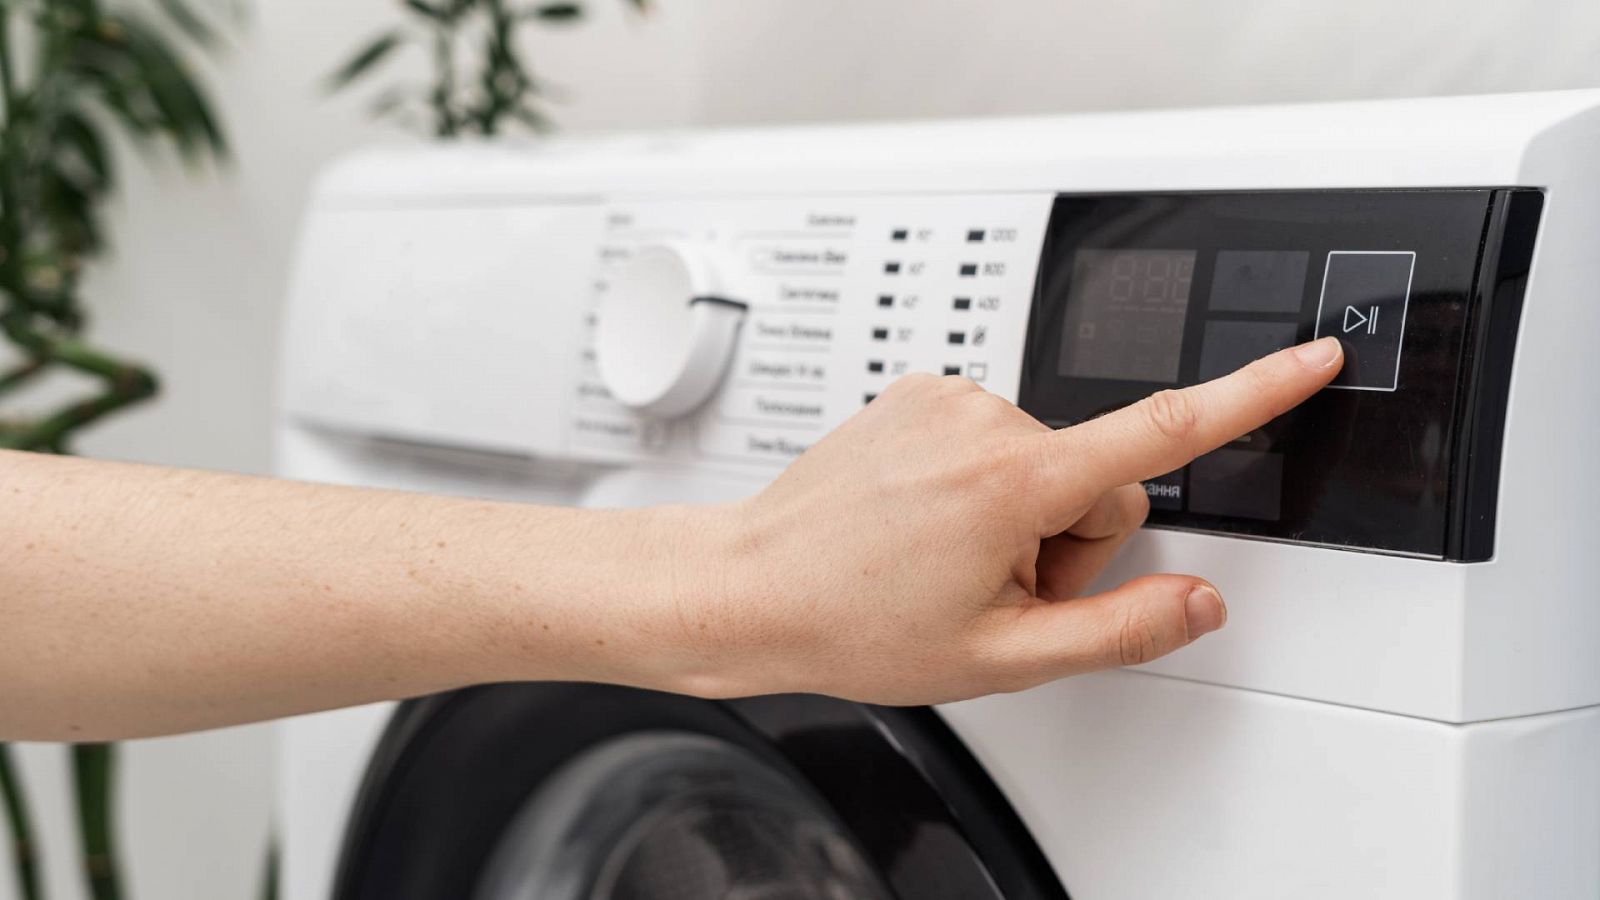 A hora es más barato poner la lavadora?